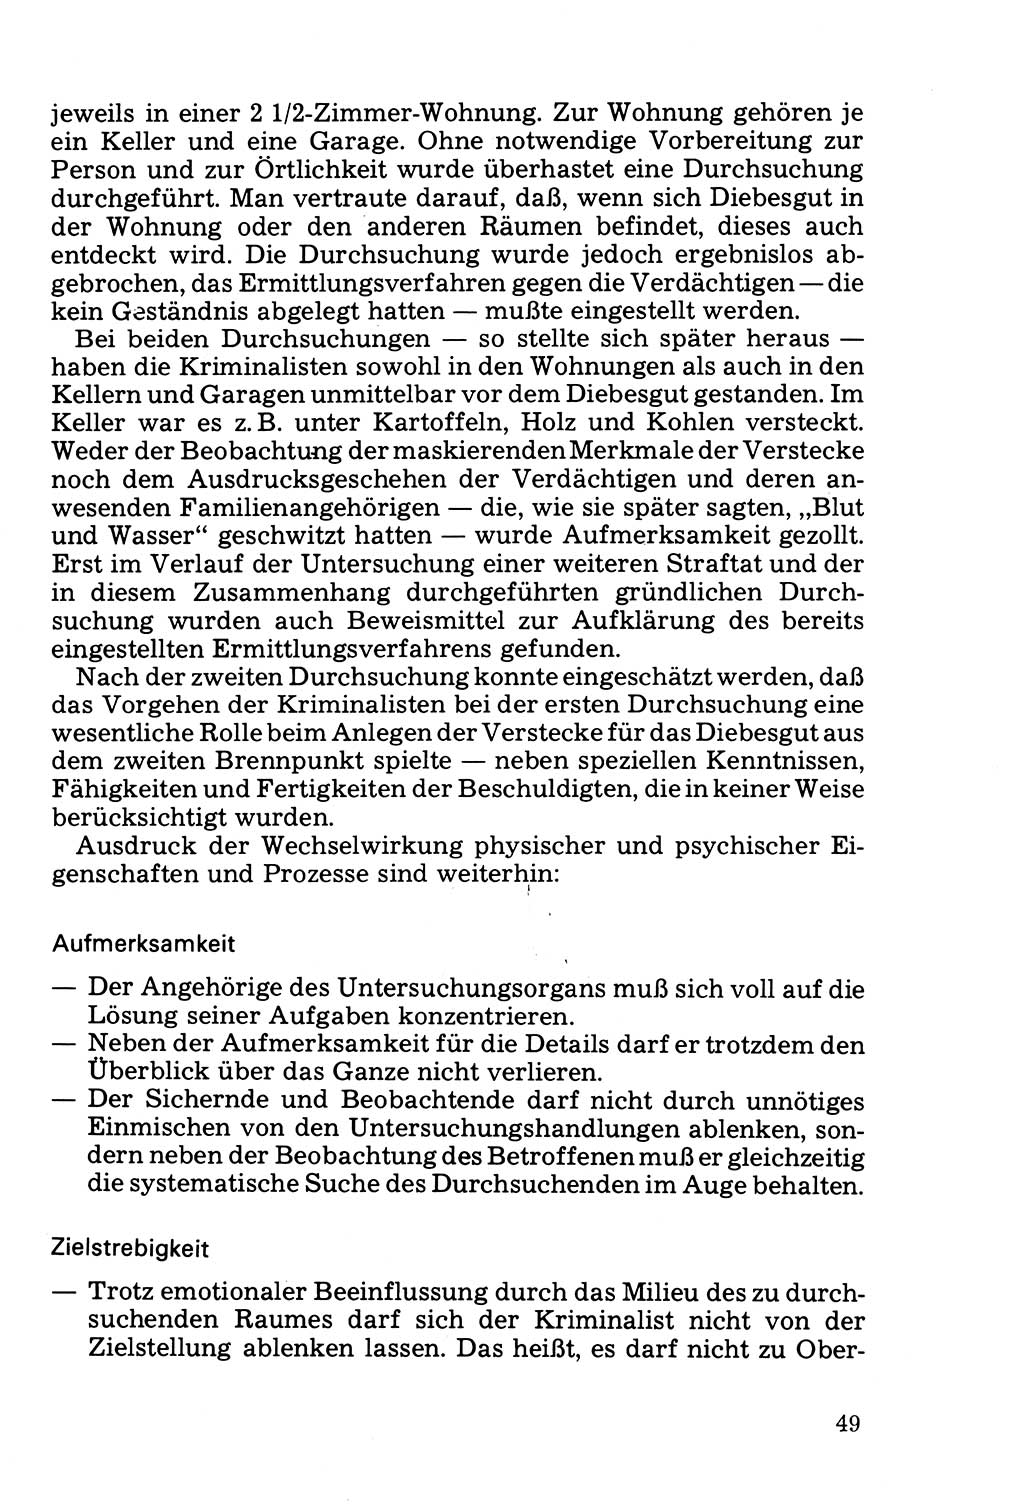 Die Durchsuchung und die Beschlagnahme [Deutsche Demokratische Republik (DDR)] 1979, Seite 49 (Durchs. Beschl. DDR 1979, S. 49)